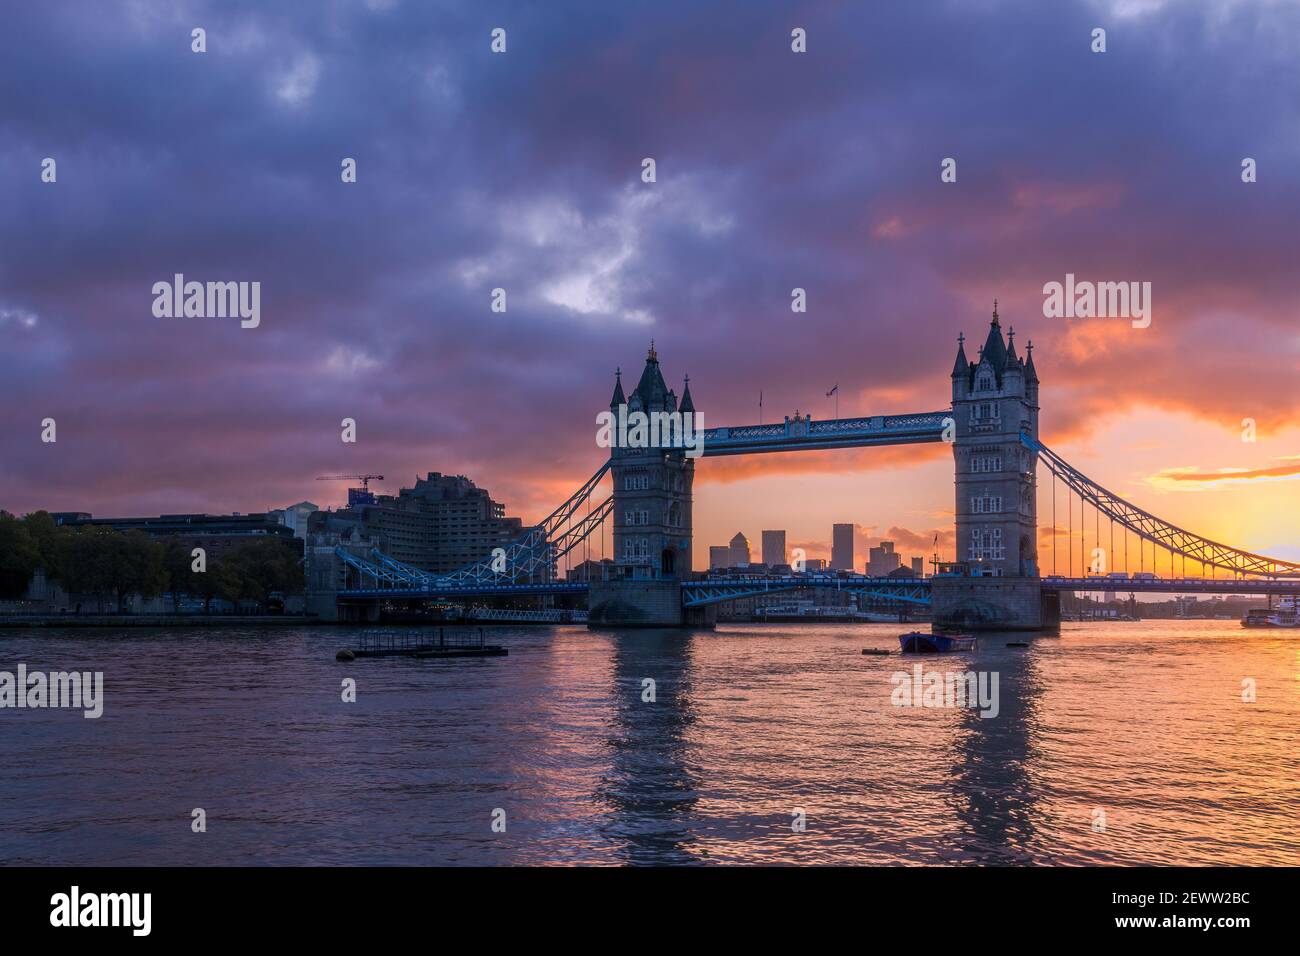 Le Tower Bridge de Londres illuminé par un lever de soleil enflammé, avec Canary Wharf en arrière-plan Banque D'Images